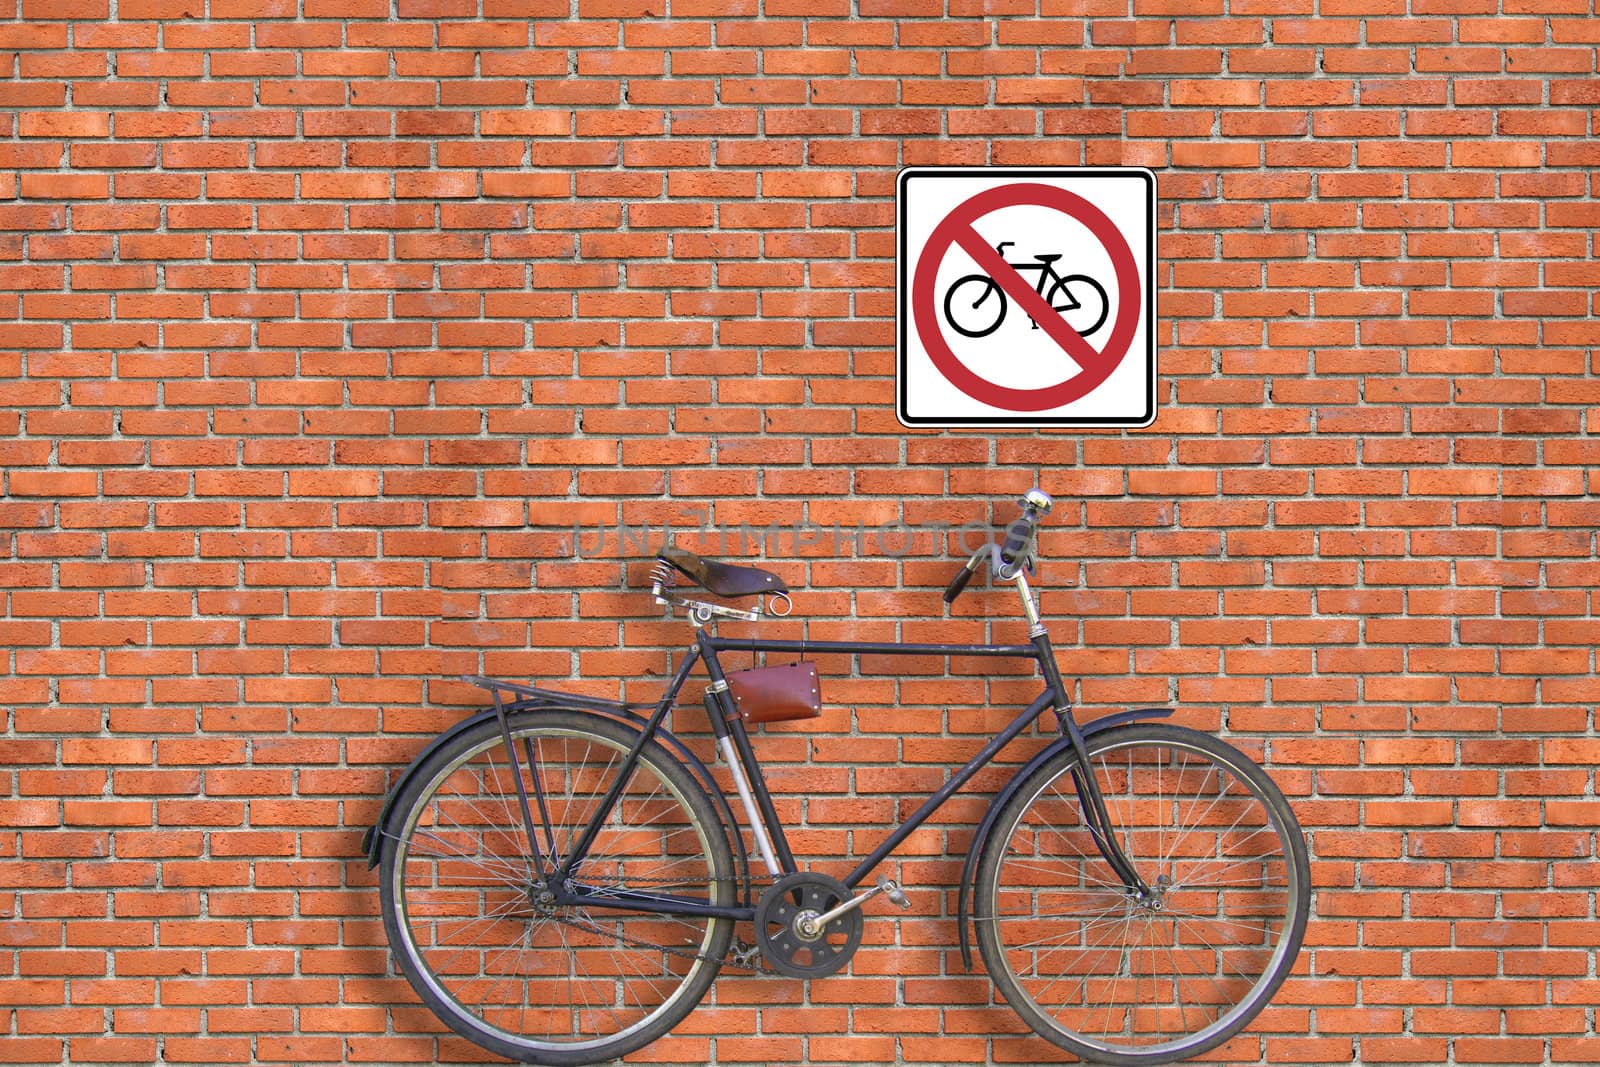 Sign. Brick wall and bicycle by petrkurgan